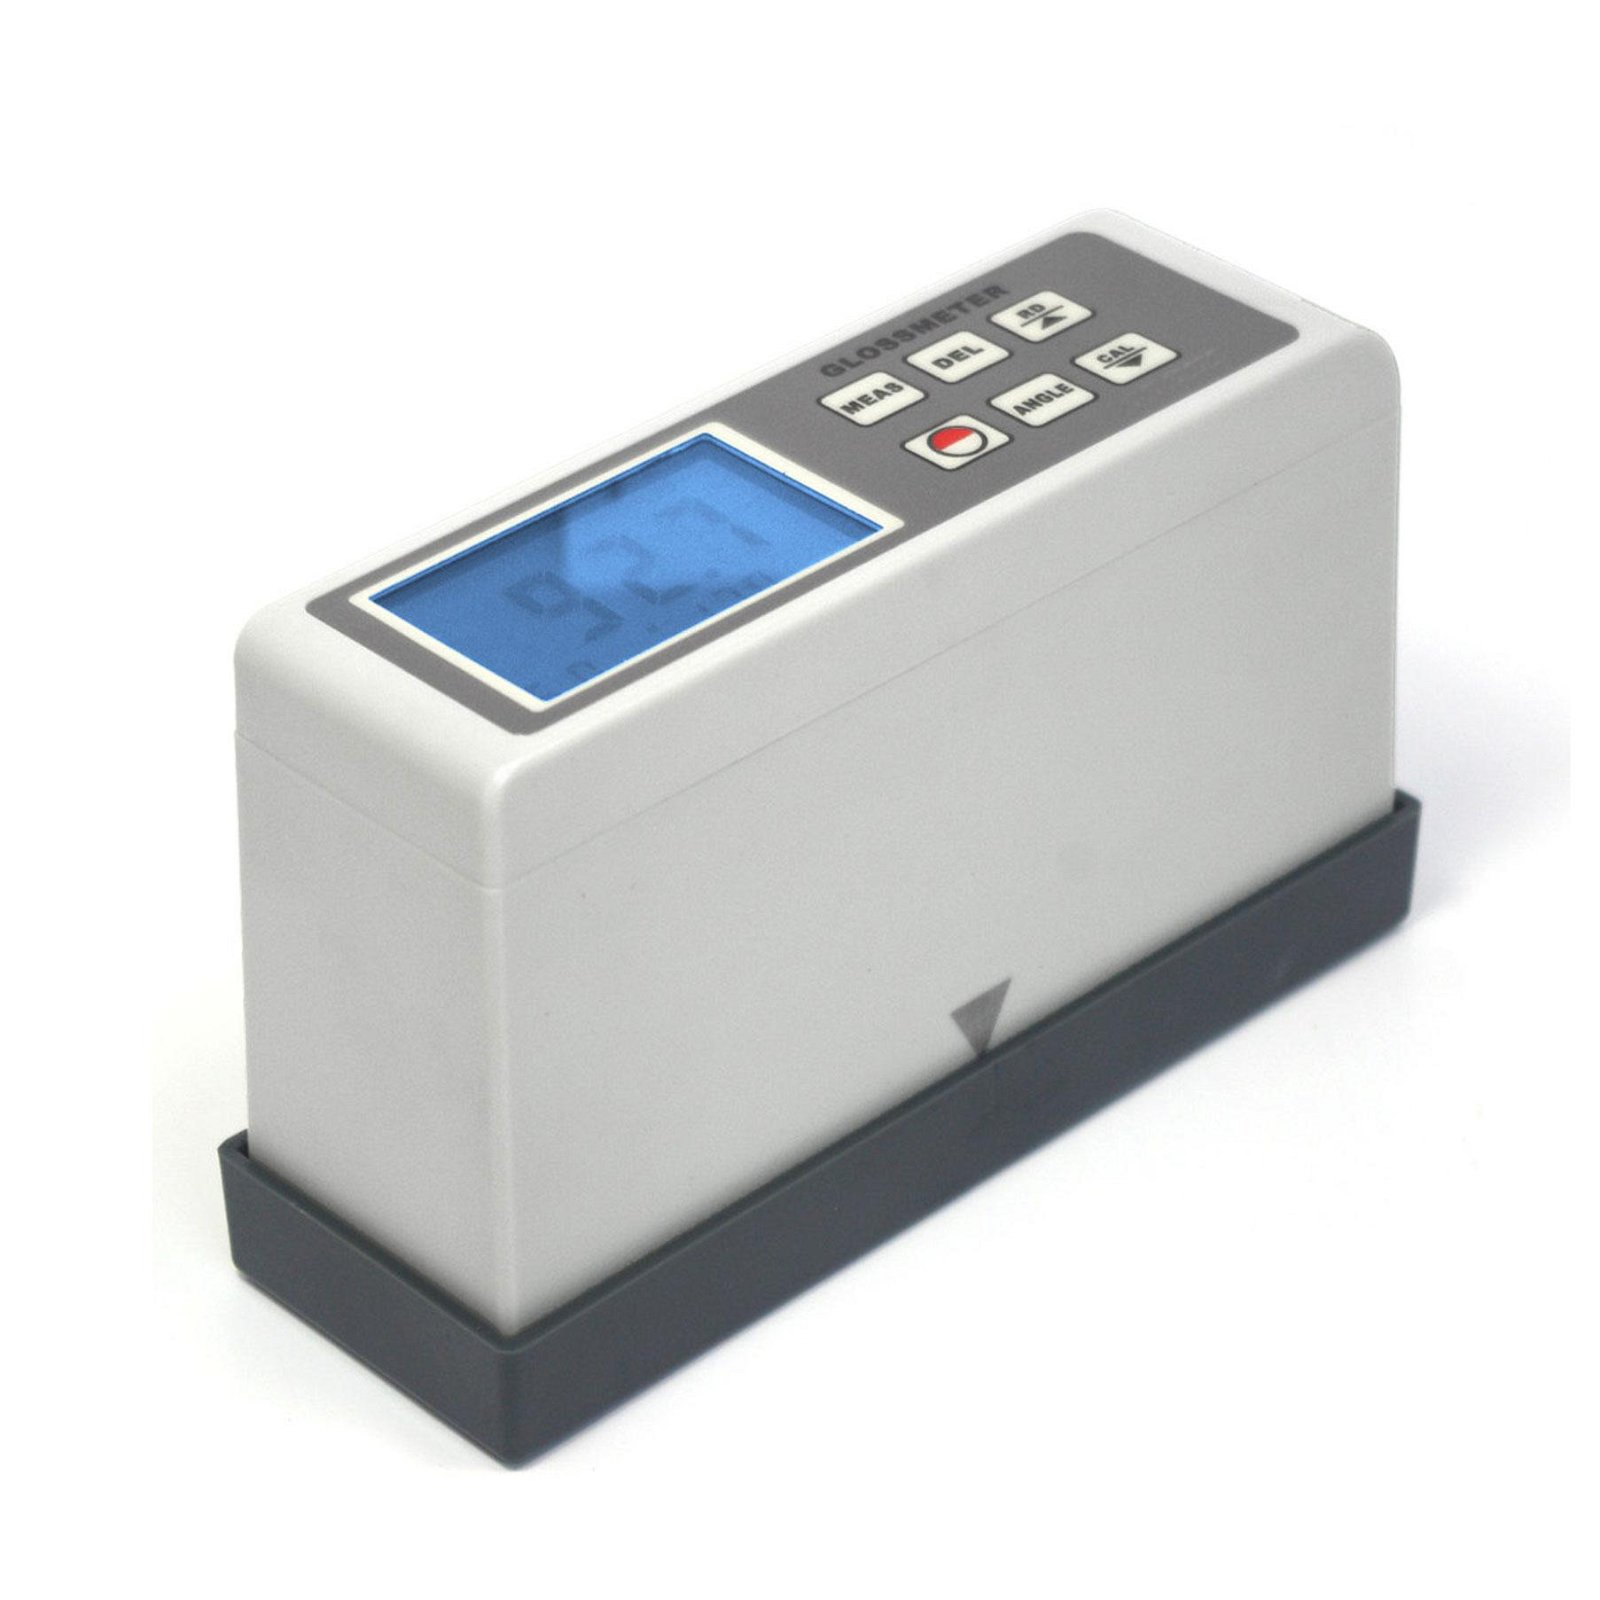 Portable Surface Gloss meter Tester AG-1268B 20 60 85 degree angle 0.1 ~ 200 GU 5